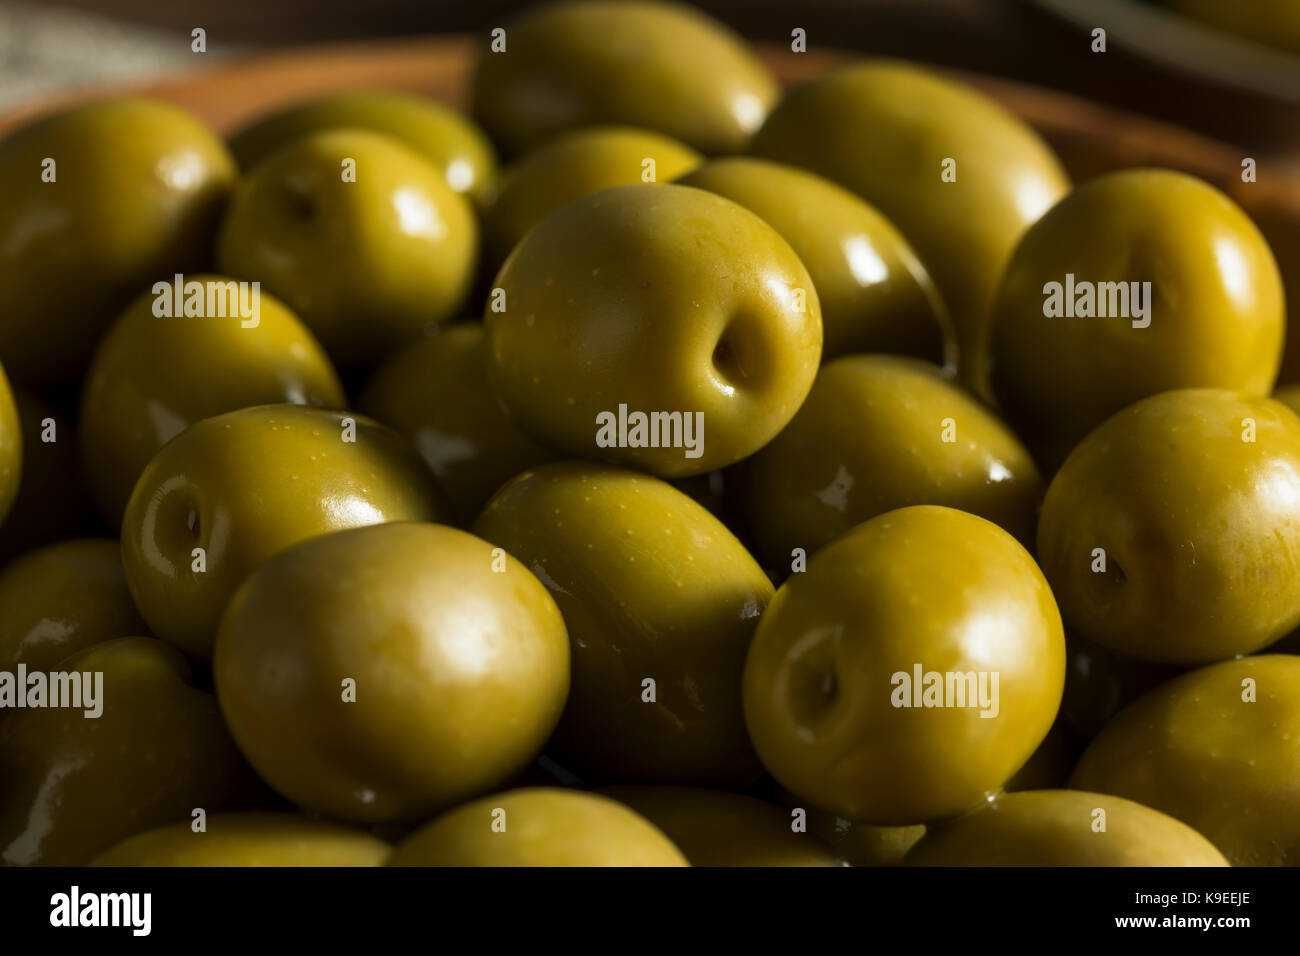 Grecque biologique dans un bol d'olives vertes Banque D'Images